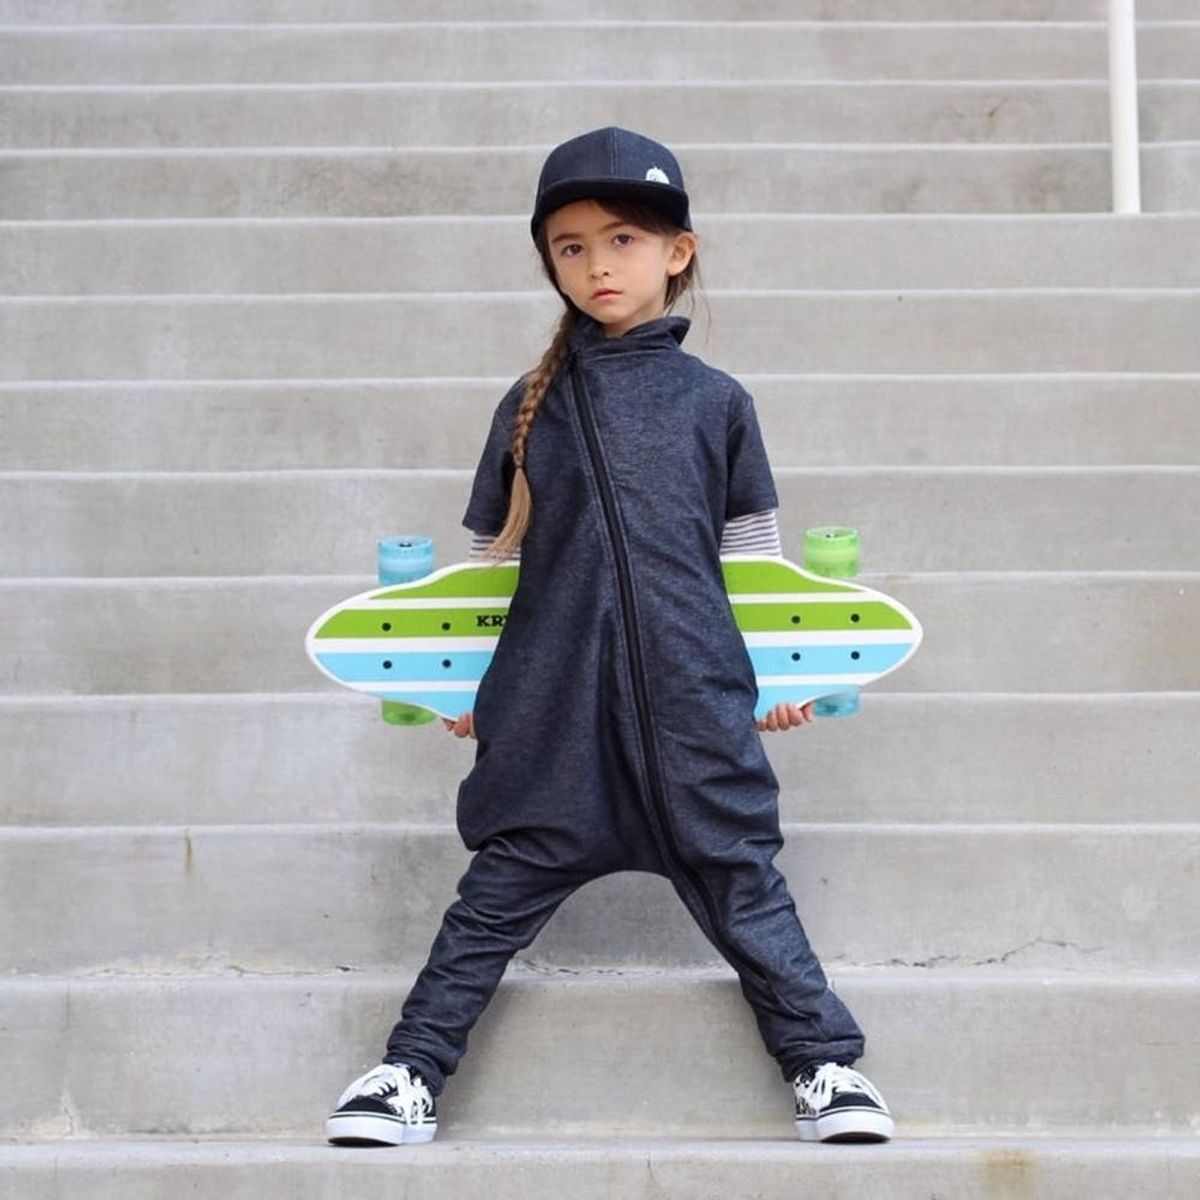 7 Adorable Gender-Neutral Kids’ Clothing Brands on Instagram